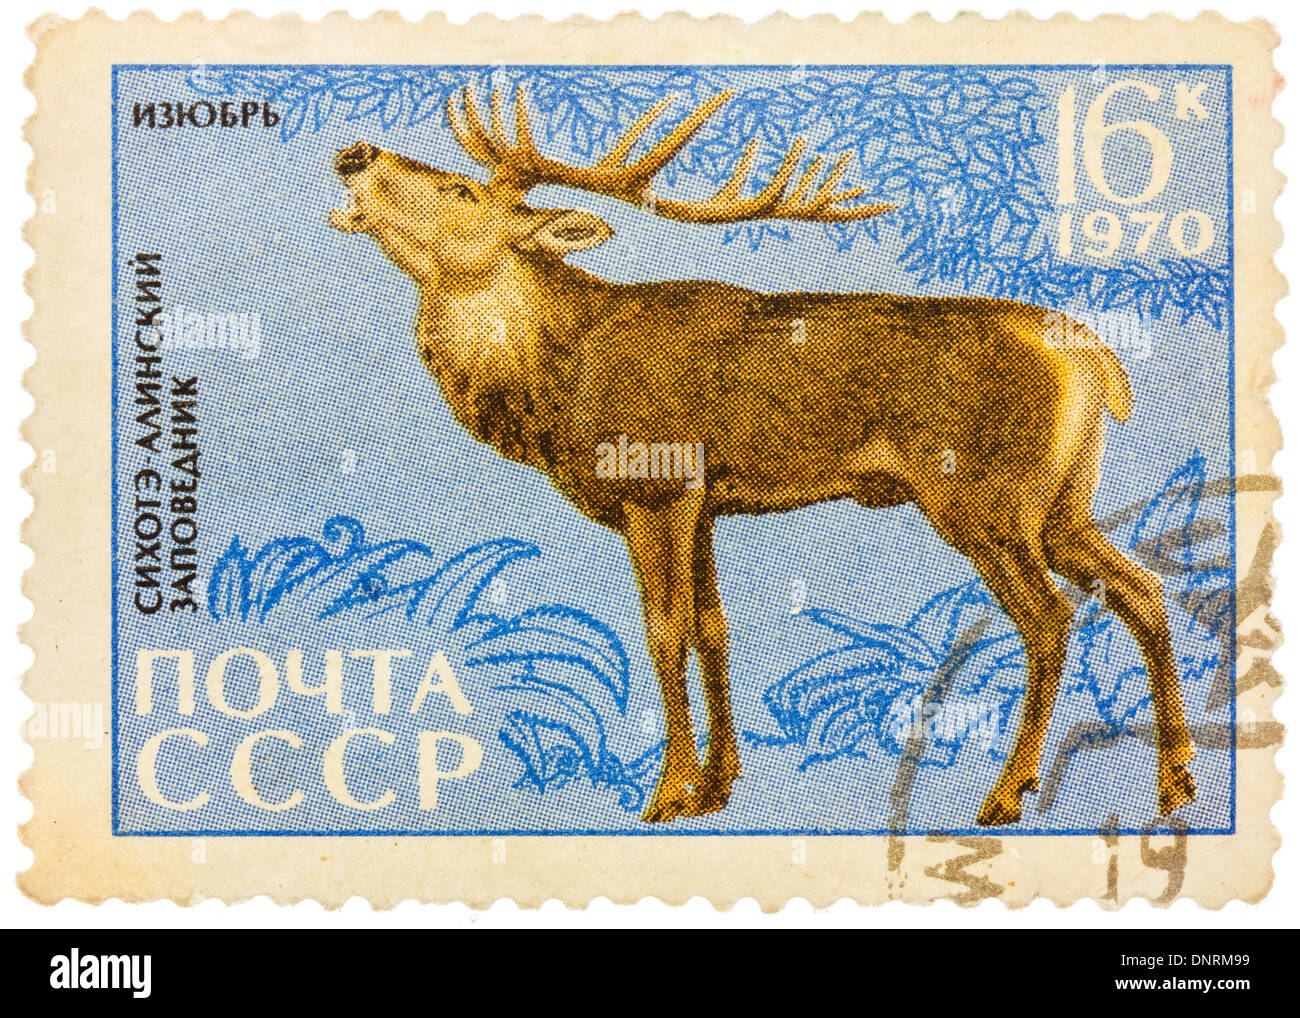 Urss - circa 1970 : timbre-poste imprimé en URSS montre une image de Cervus elaphus (xanthopygus) mandchourie Banque D'Images